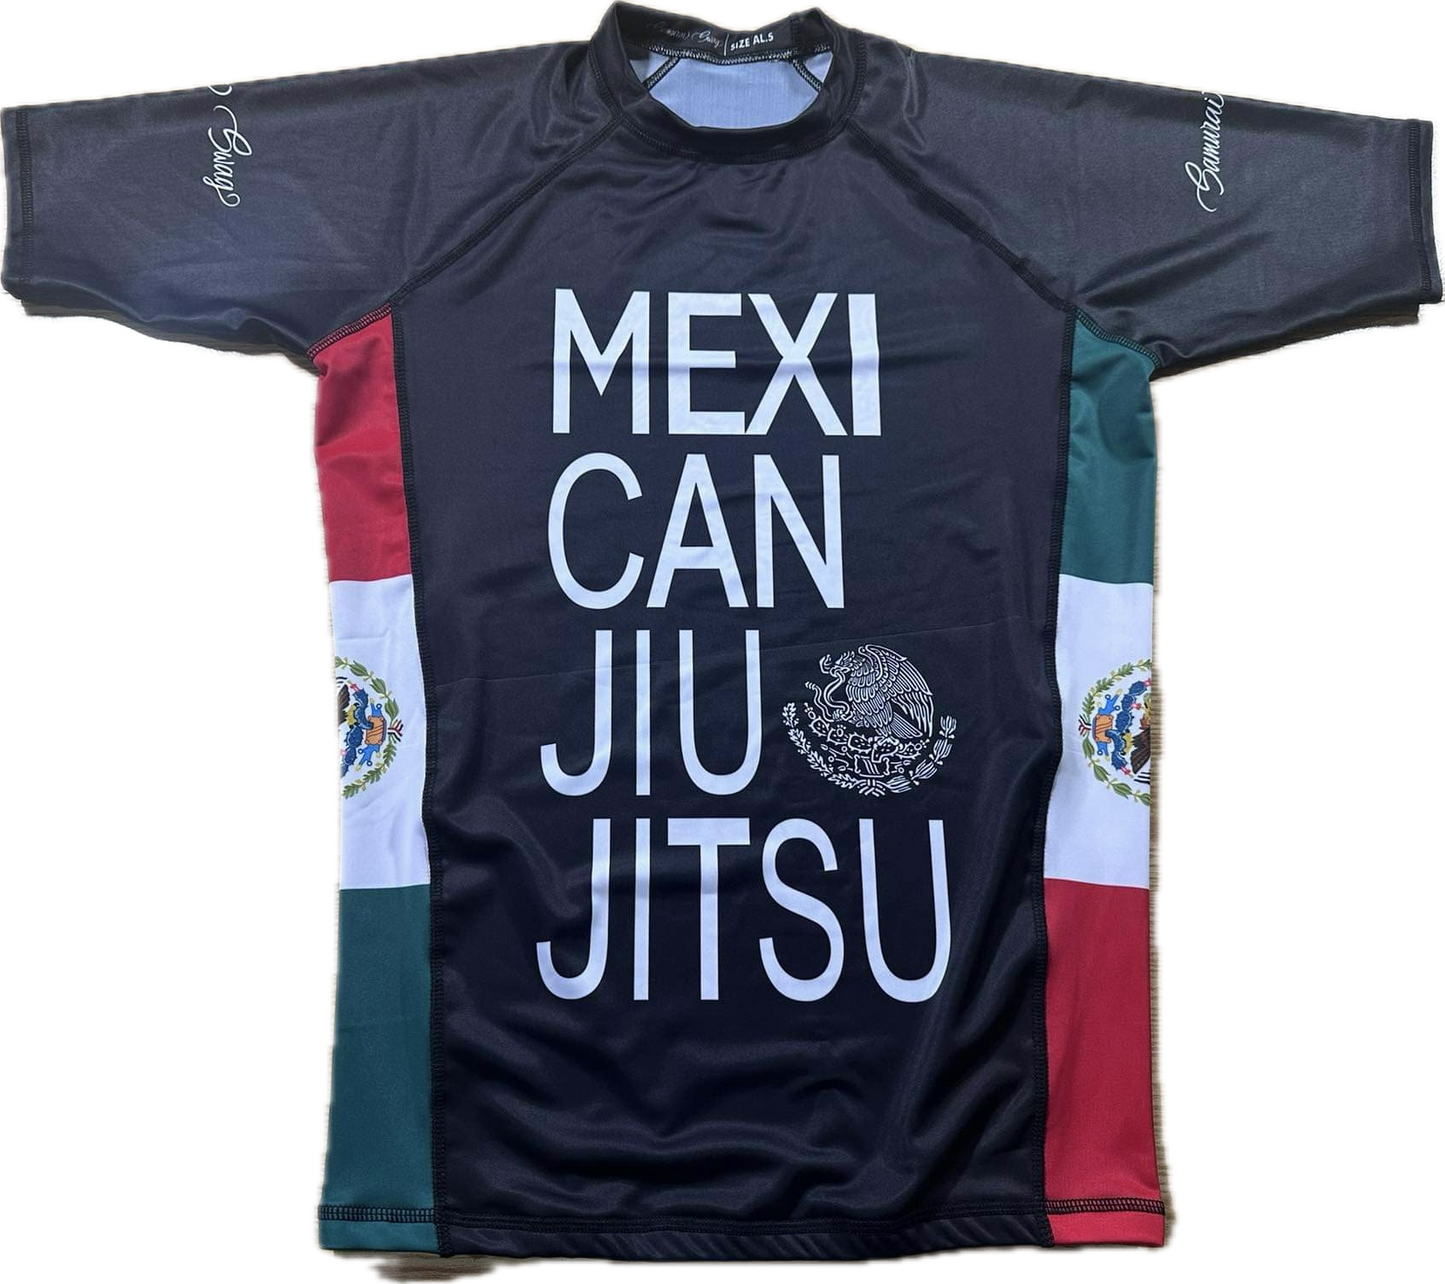 Mexican Jiu Jitsu Rashguard